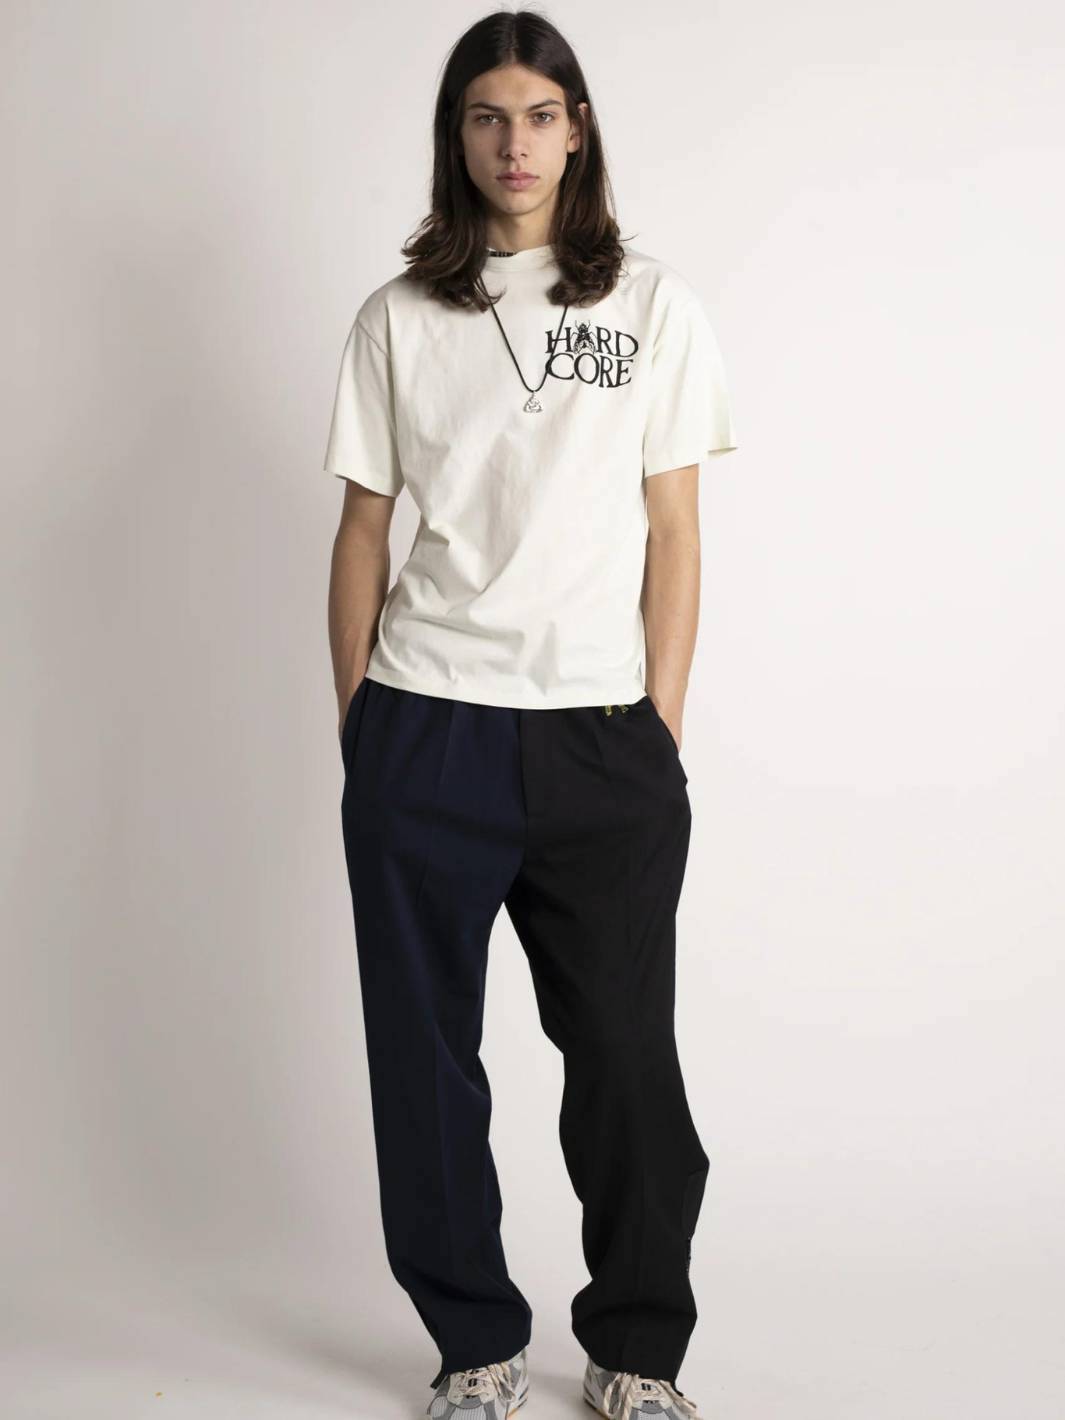 Aries Tees & Longsleeves T-skjorte | Palm SS Tee Frost